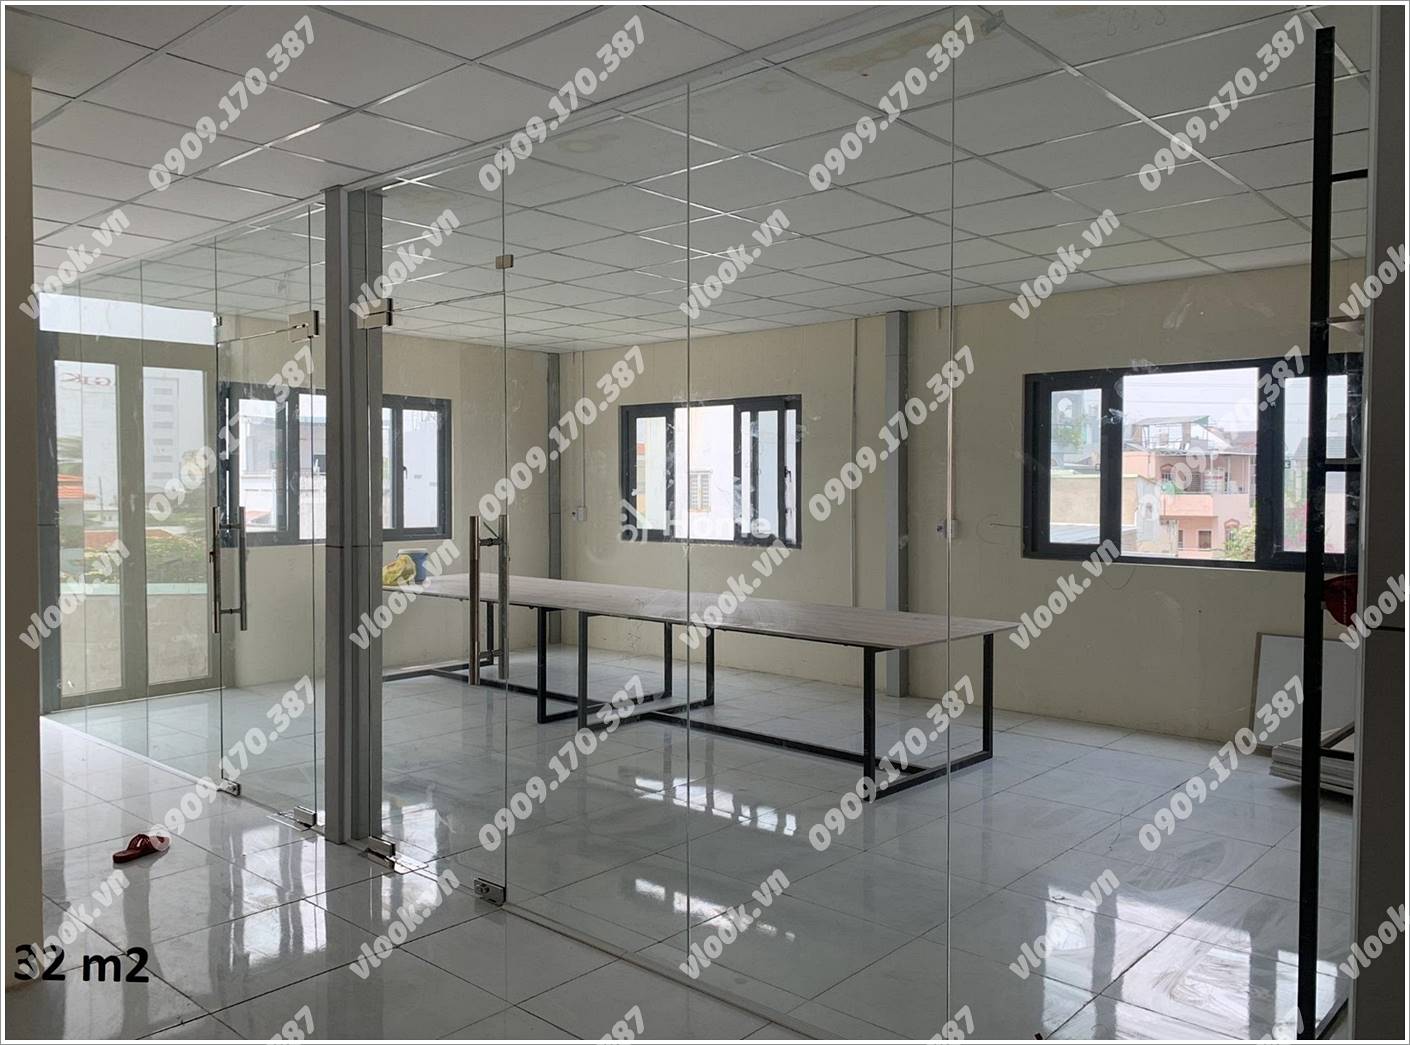 Cao ốc văn phòng cho thuê toà nhà Vương An Building, Đường số 7, Quận Thủ Đức - vlook.vn